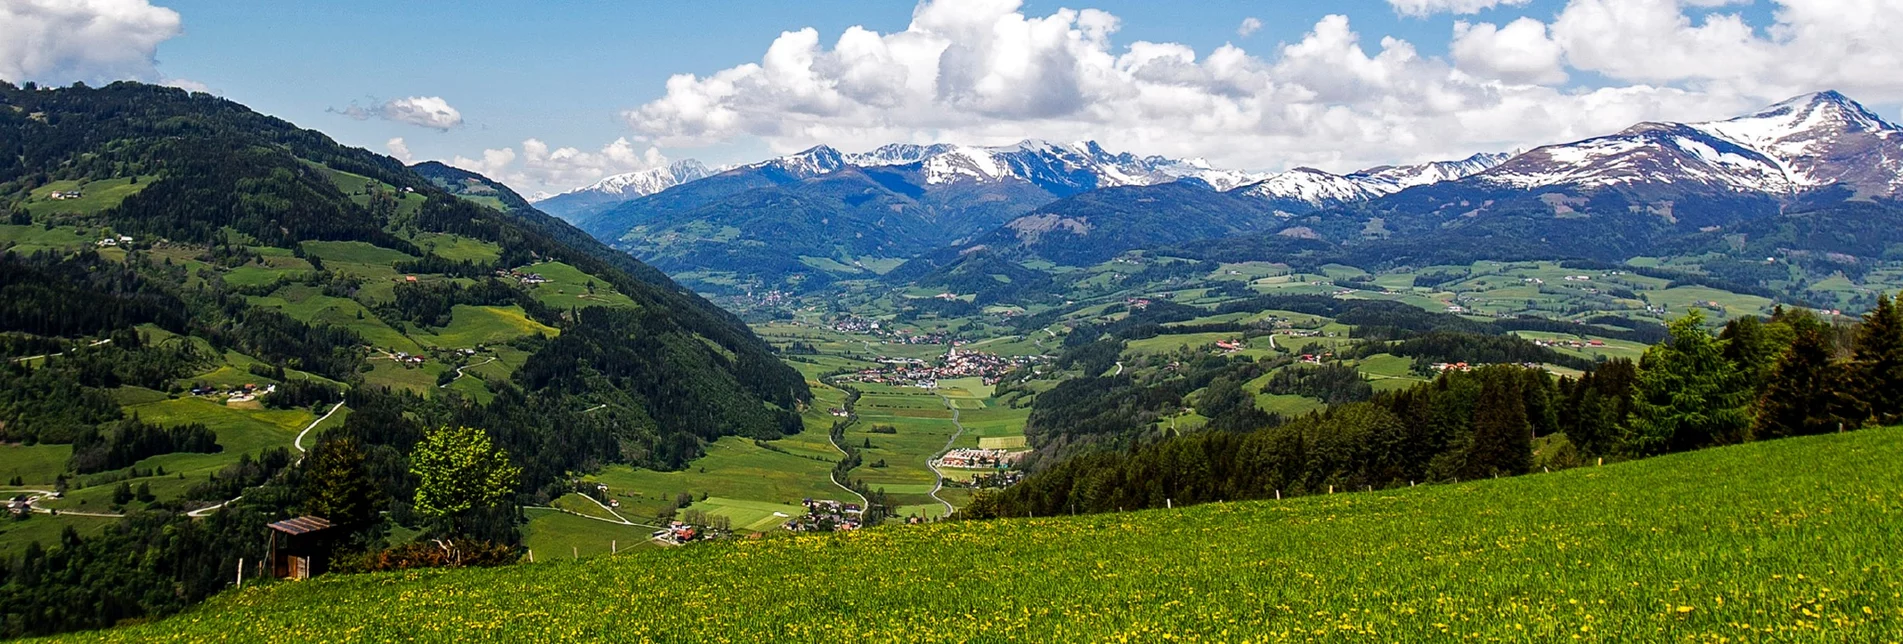 Wanderung Etappe 10 Vom Gletscher zum Wein Südroute St. Peter am Kammersberg - Murau - Touren-Impression #1 | © Steiermark Tourismus/Tom Lamm